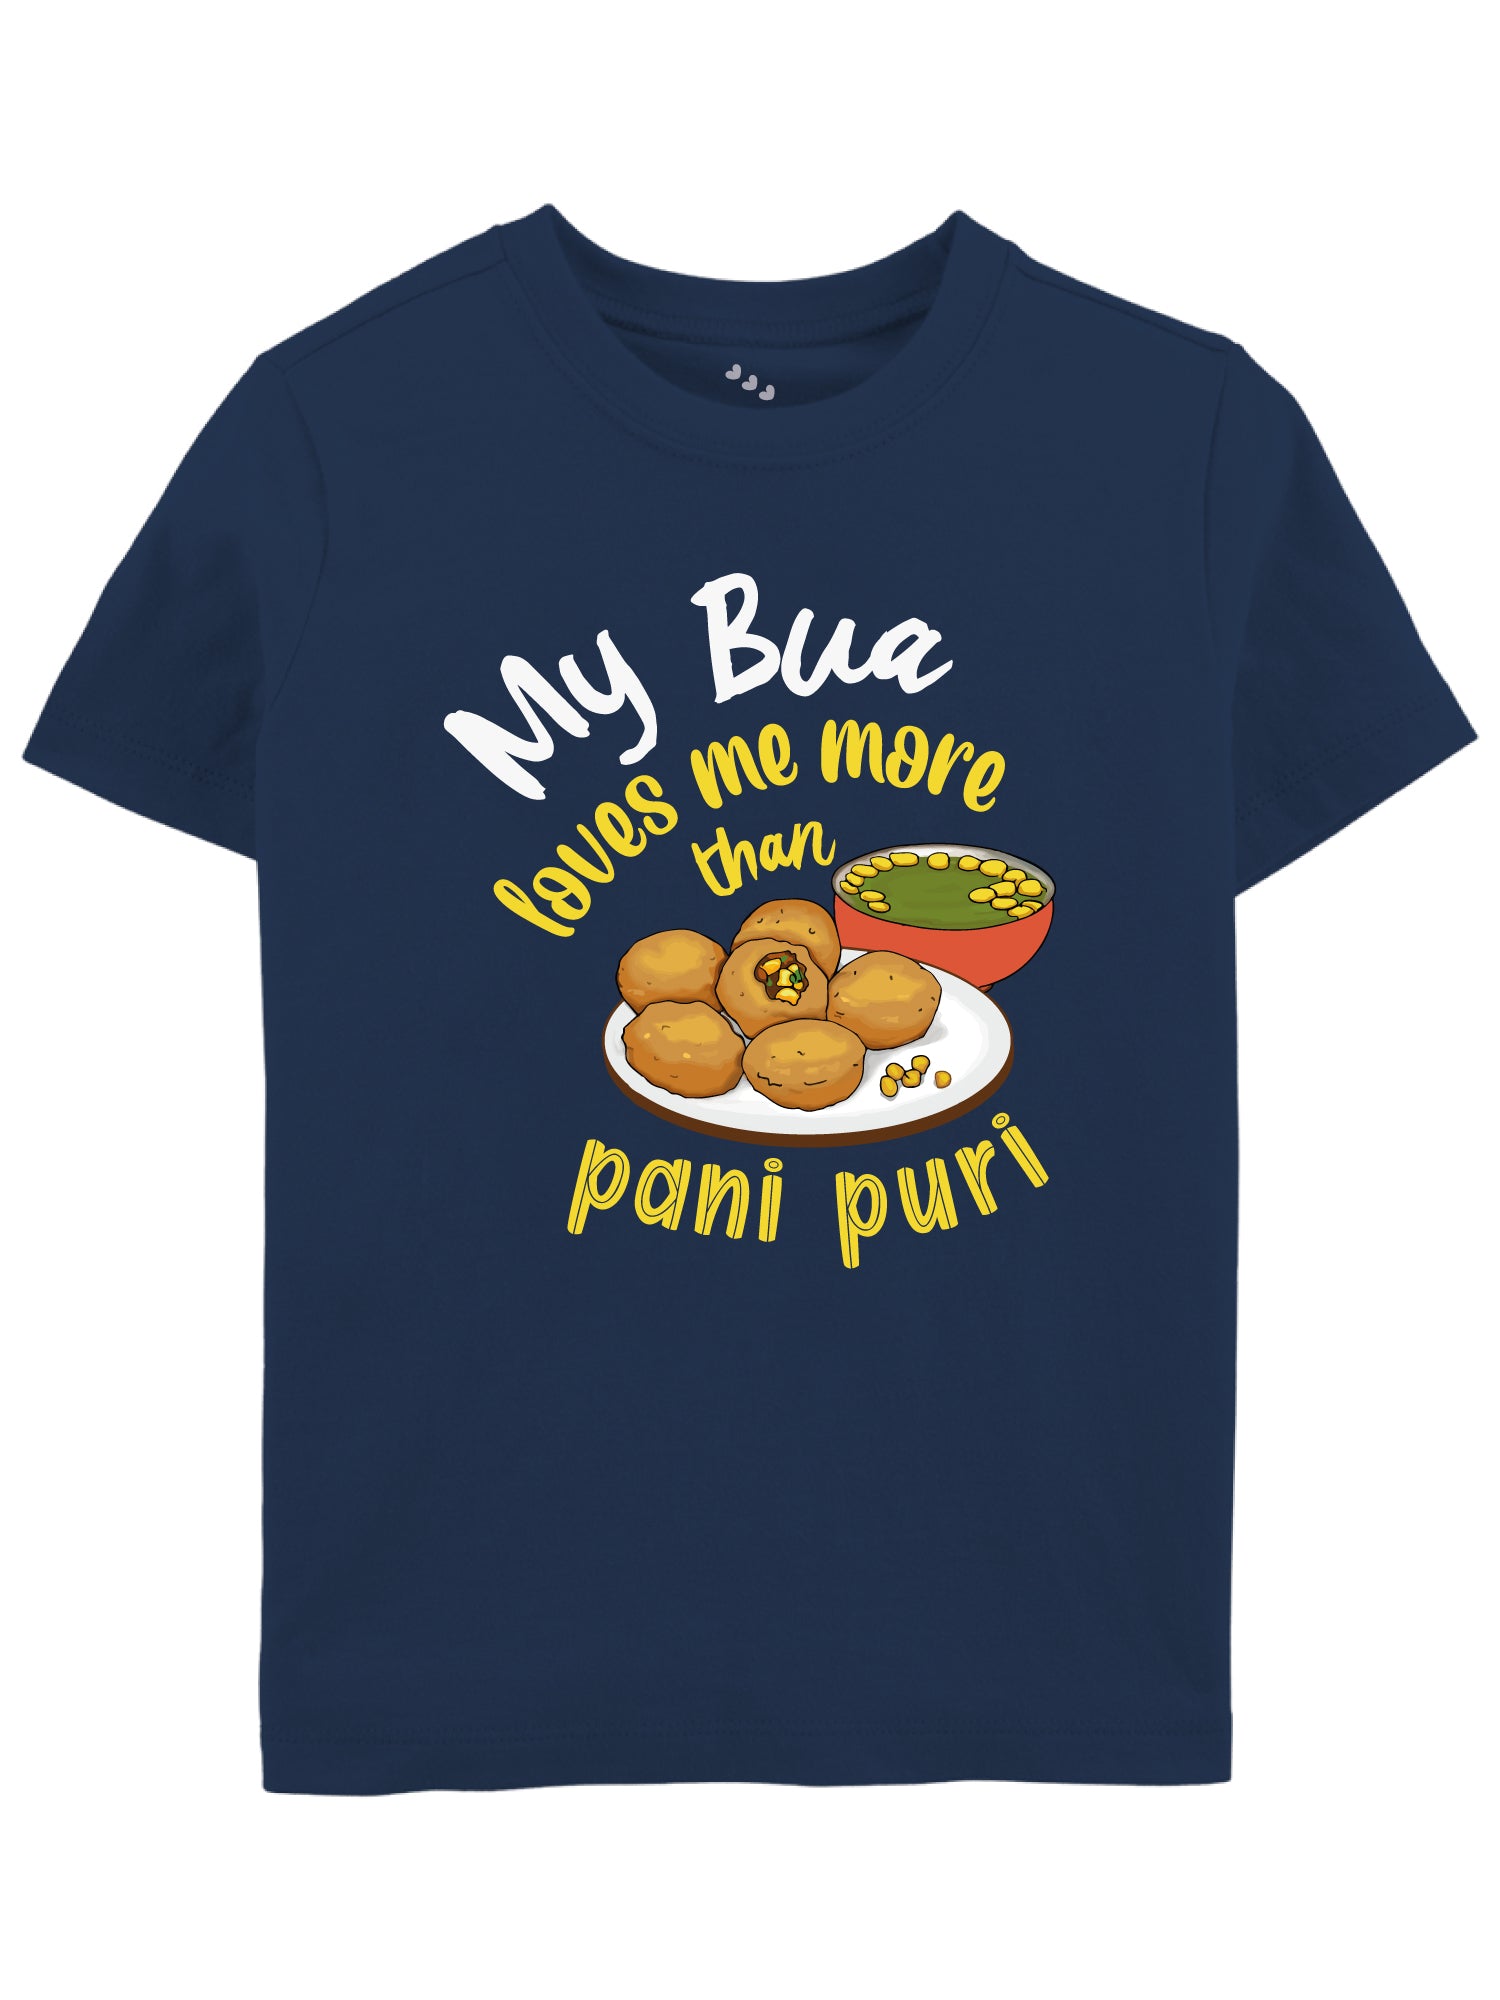 My Bua Loves me More than Pani-Puri - Tee